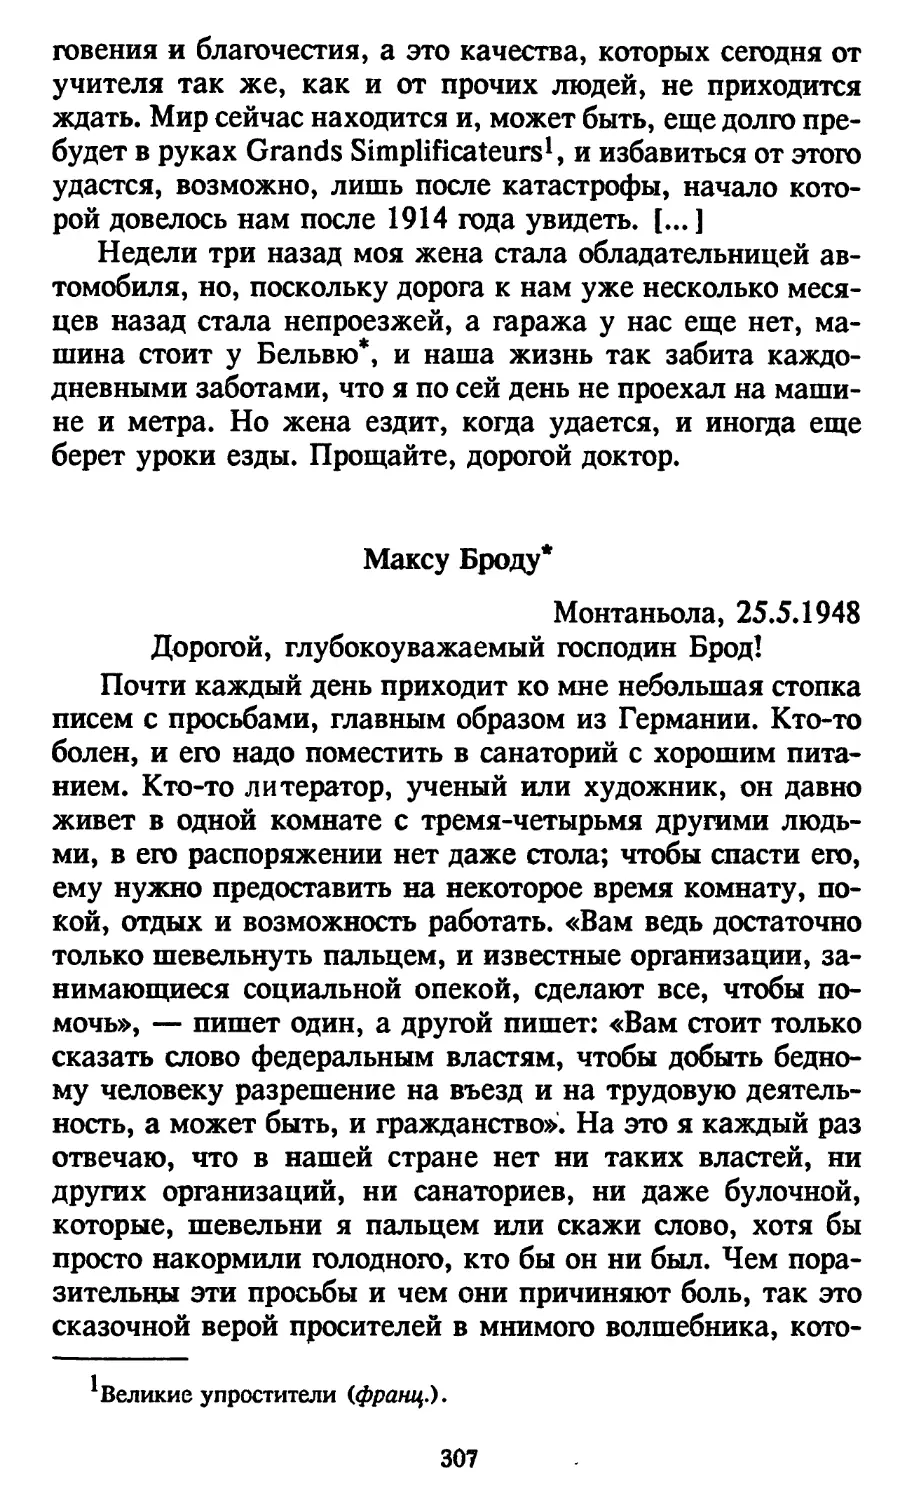 Максу Броду. 25.5.1948